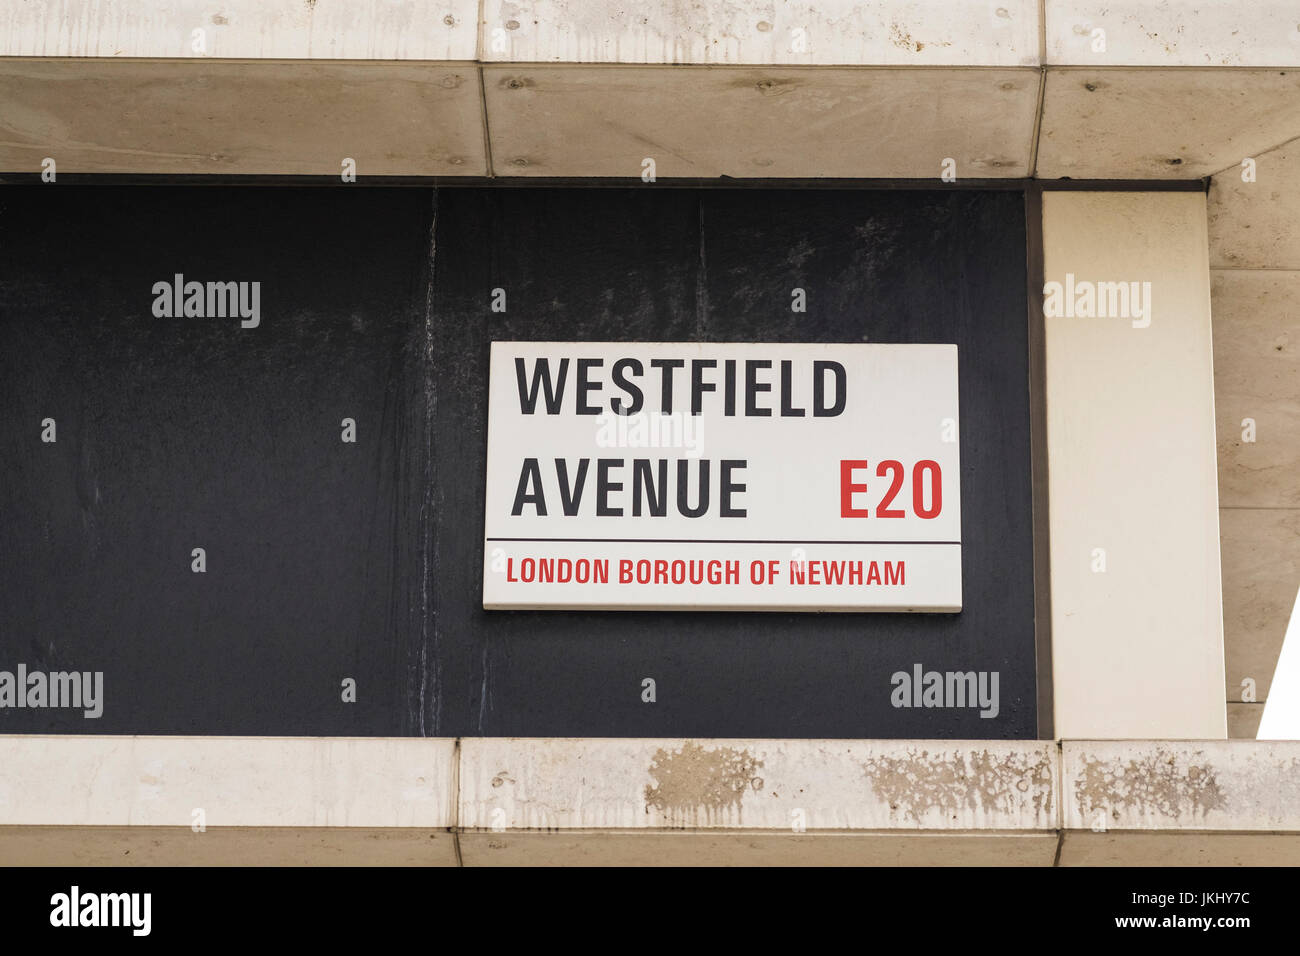 Rue Avenue Westfield signe sur le bord de la Westfield Shopping Centre, Stratford, Arrondissement de Newham, Londres, Angleterre, Royaume-Uni Banque D'Images